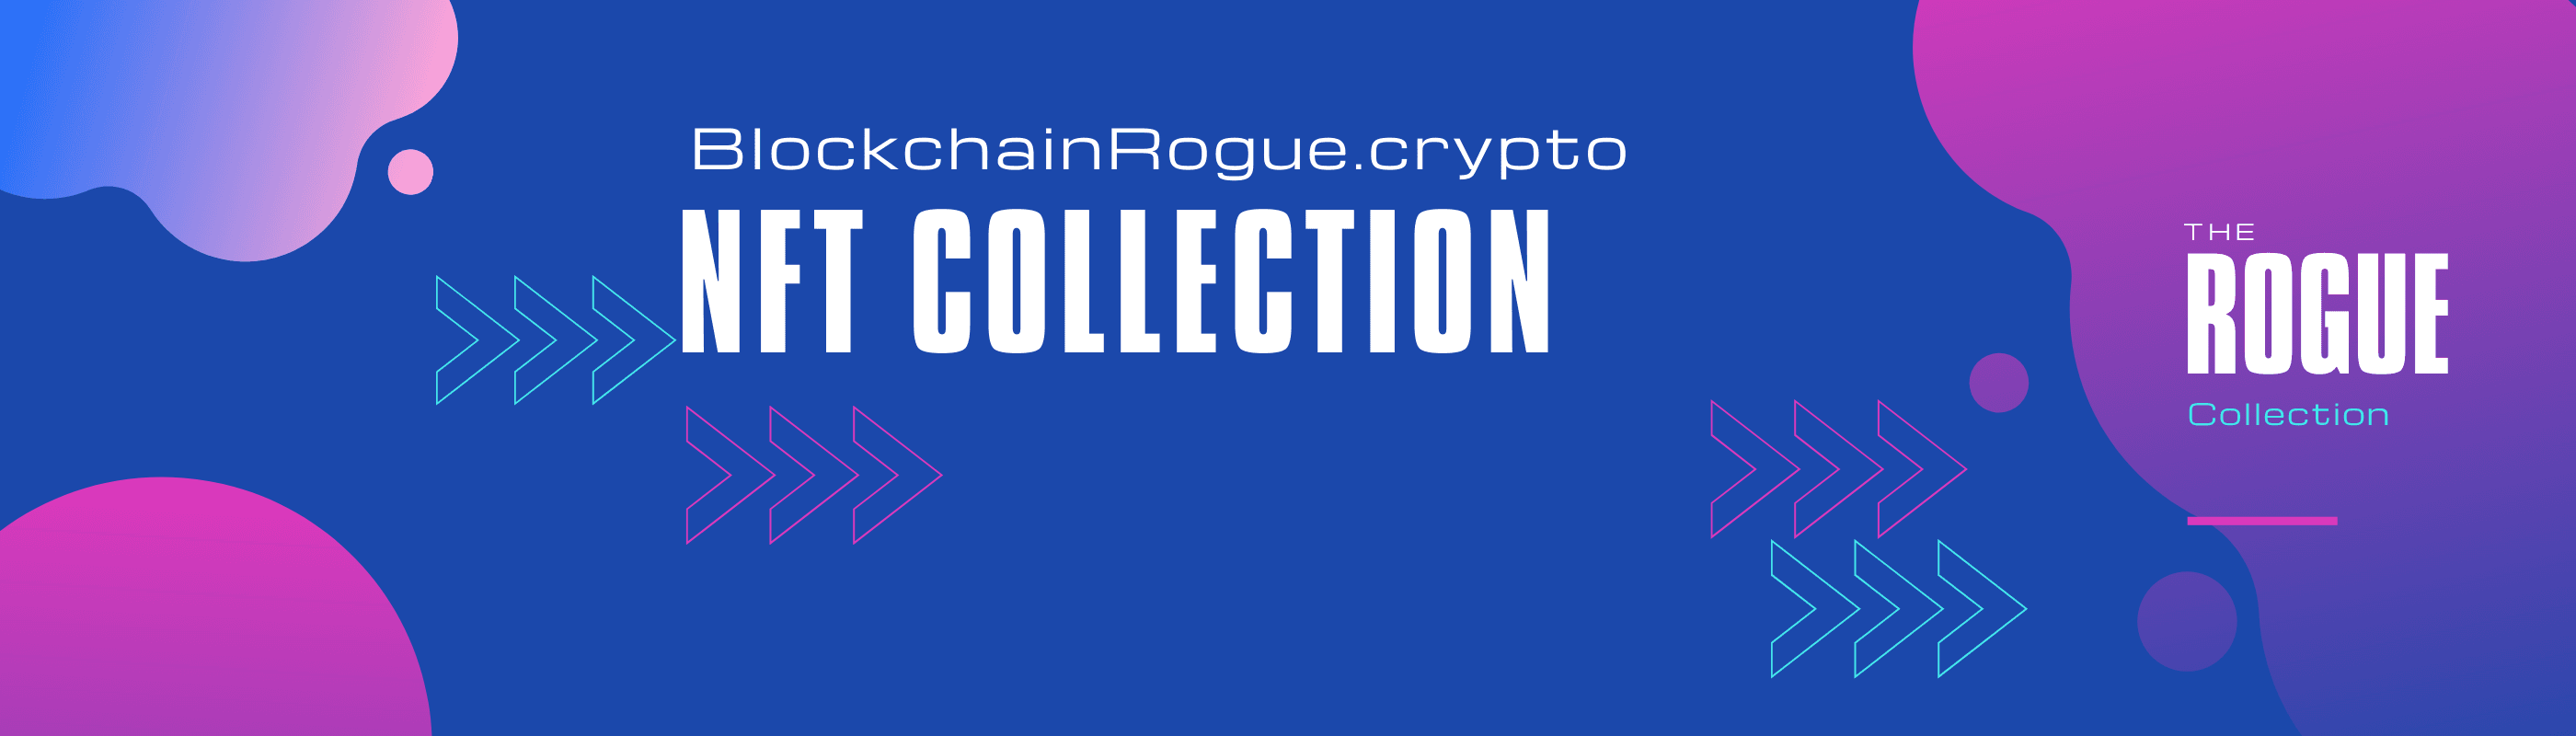 BlockchainRogue bannière